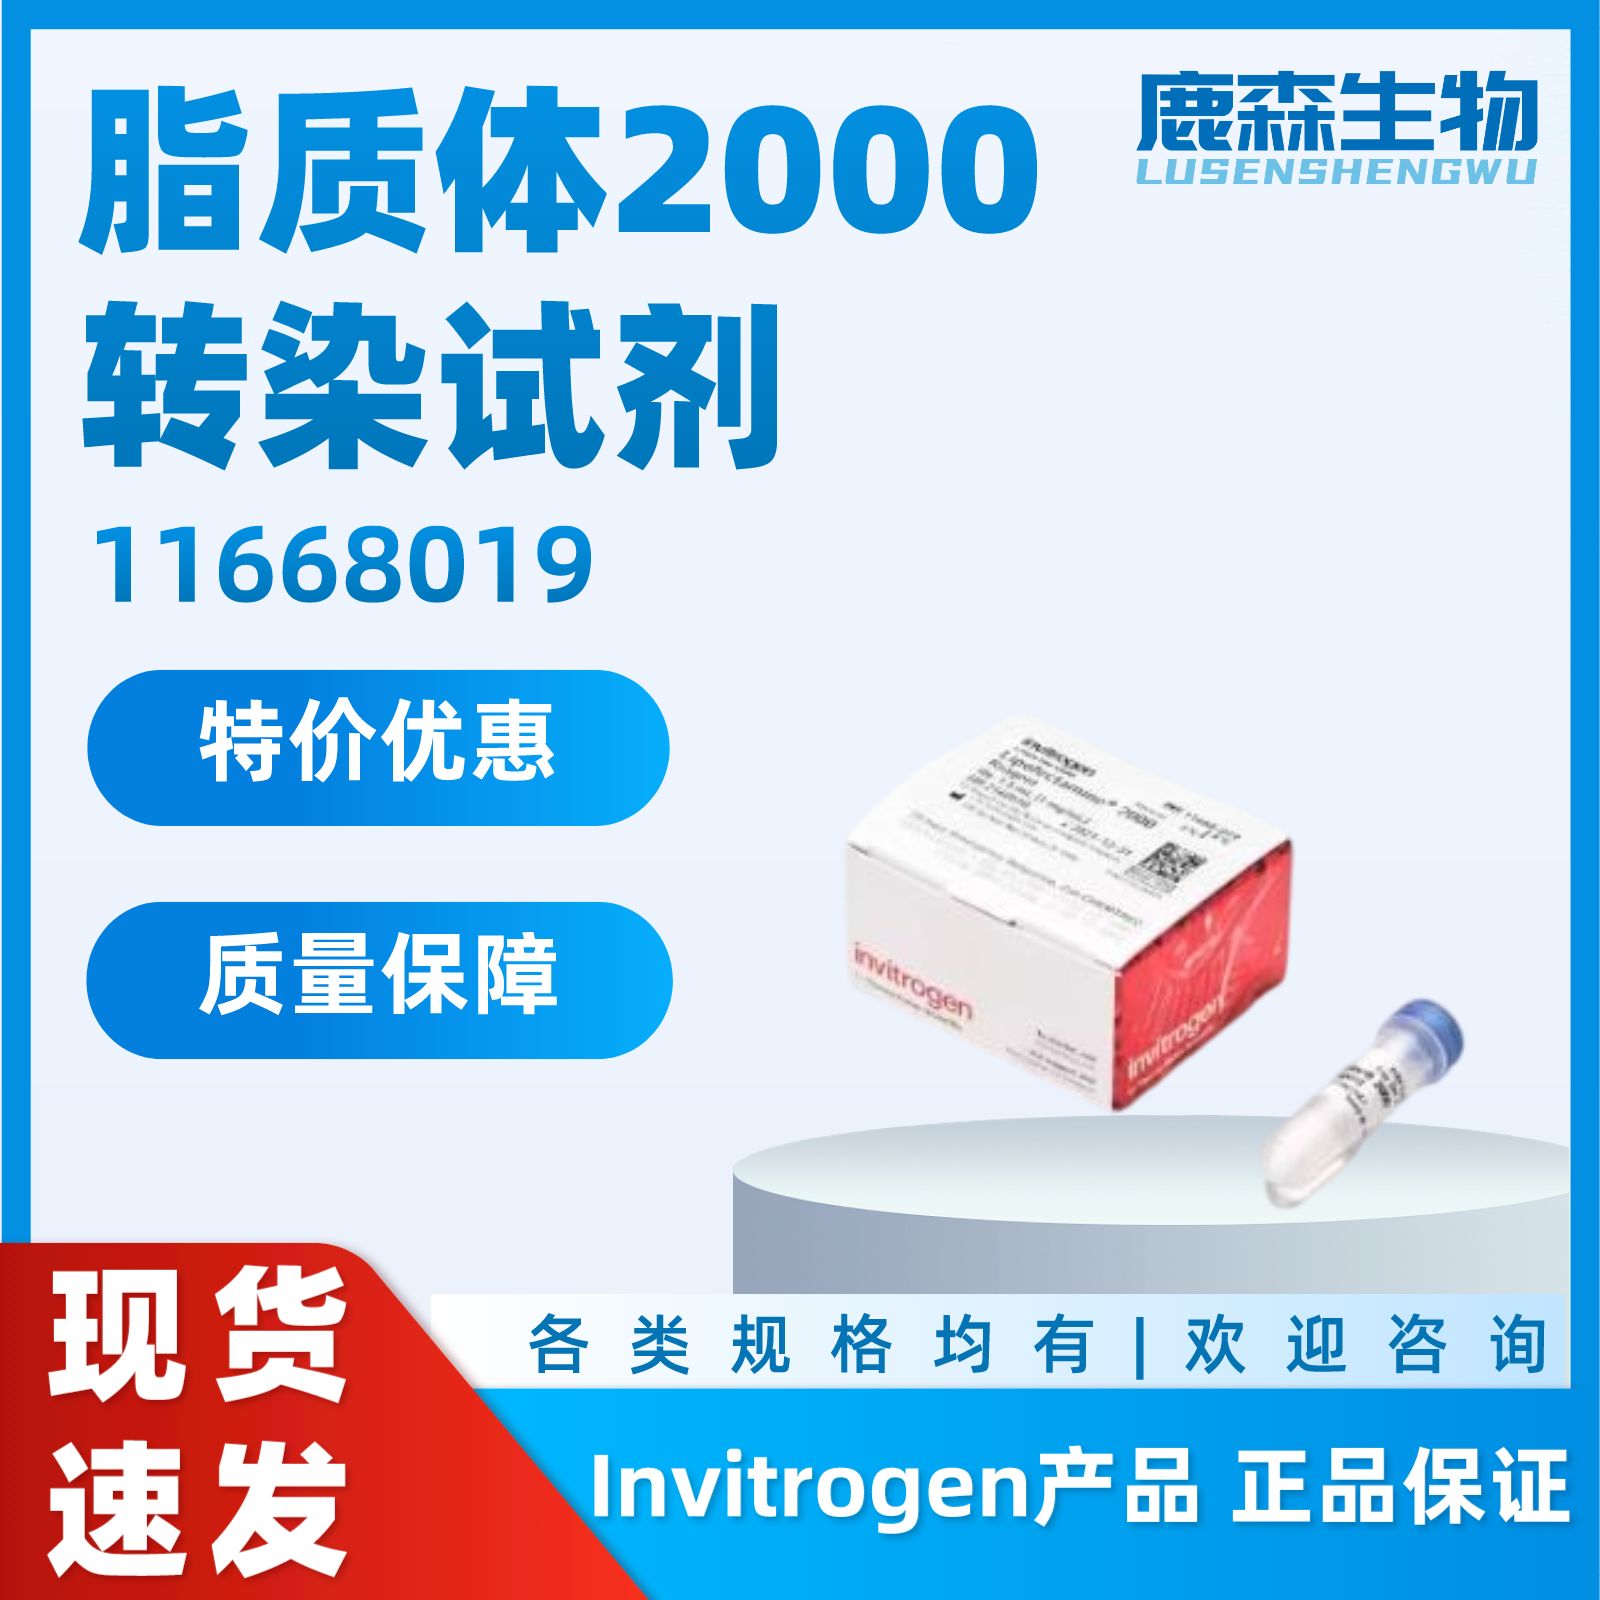 Lipofectamine2000，脂质体2000，11668019